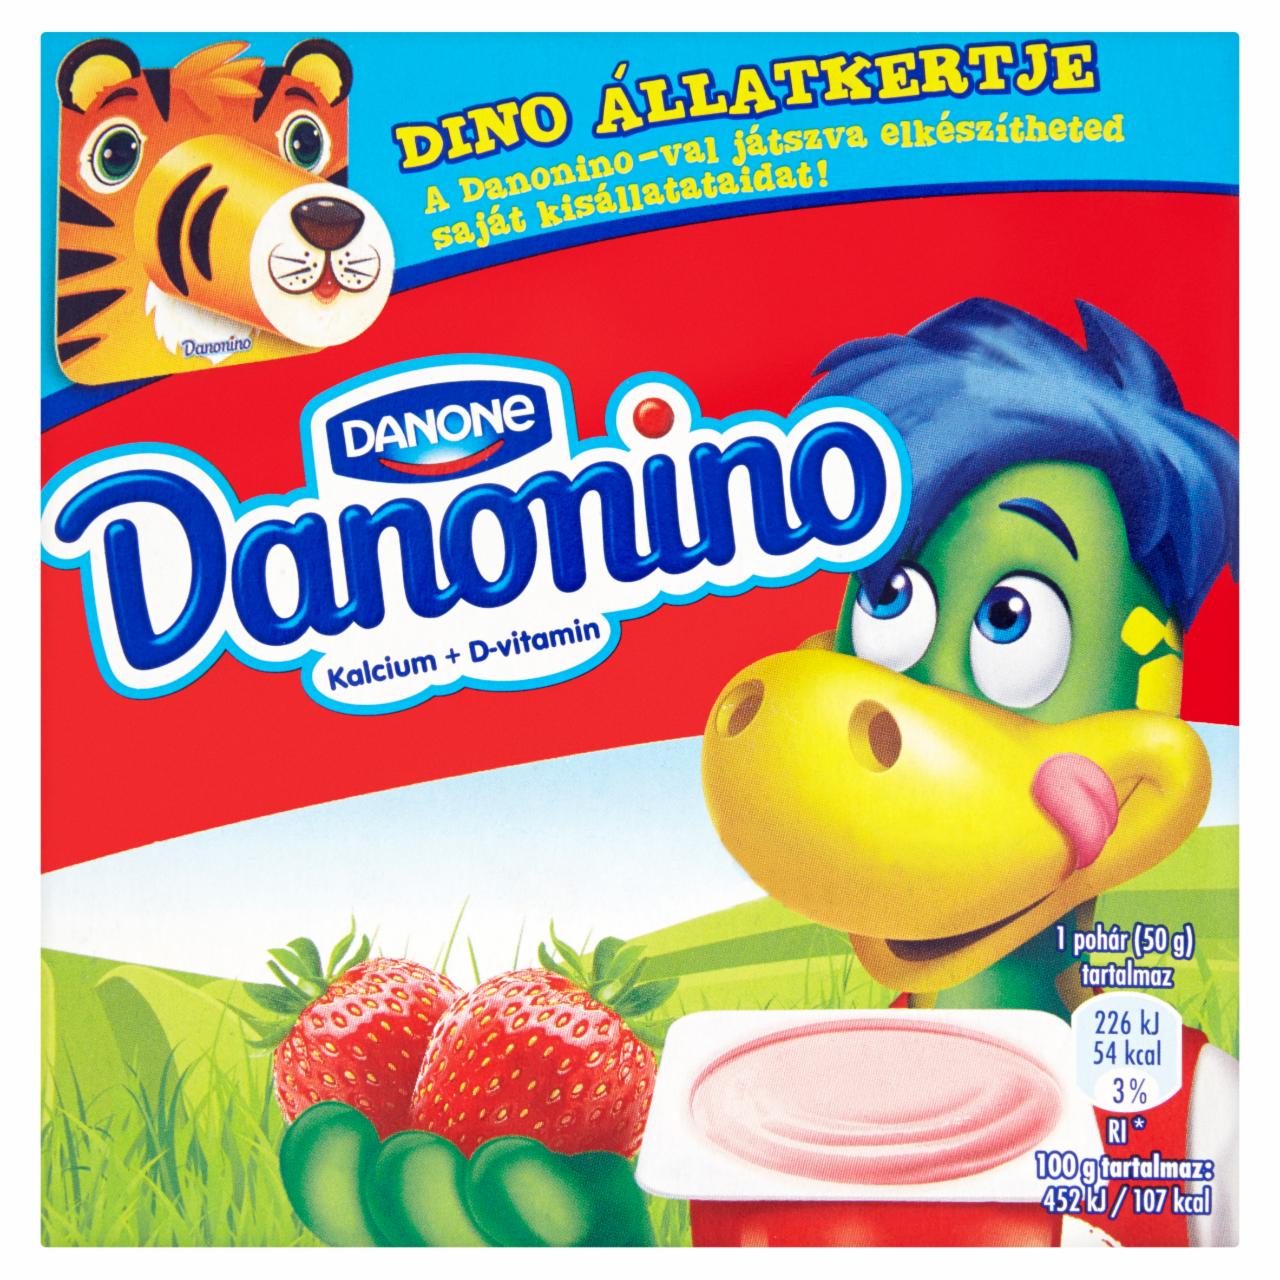 Képek - Danone Danonino eperízű tejtermék hozzáadott kalciummal és D-vitaminnal 4 x 50 g